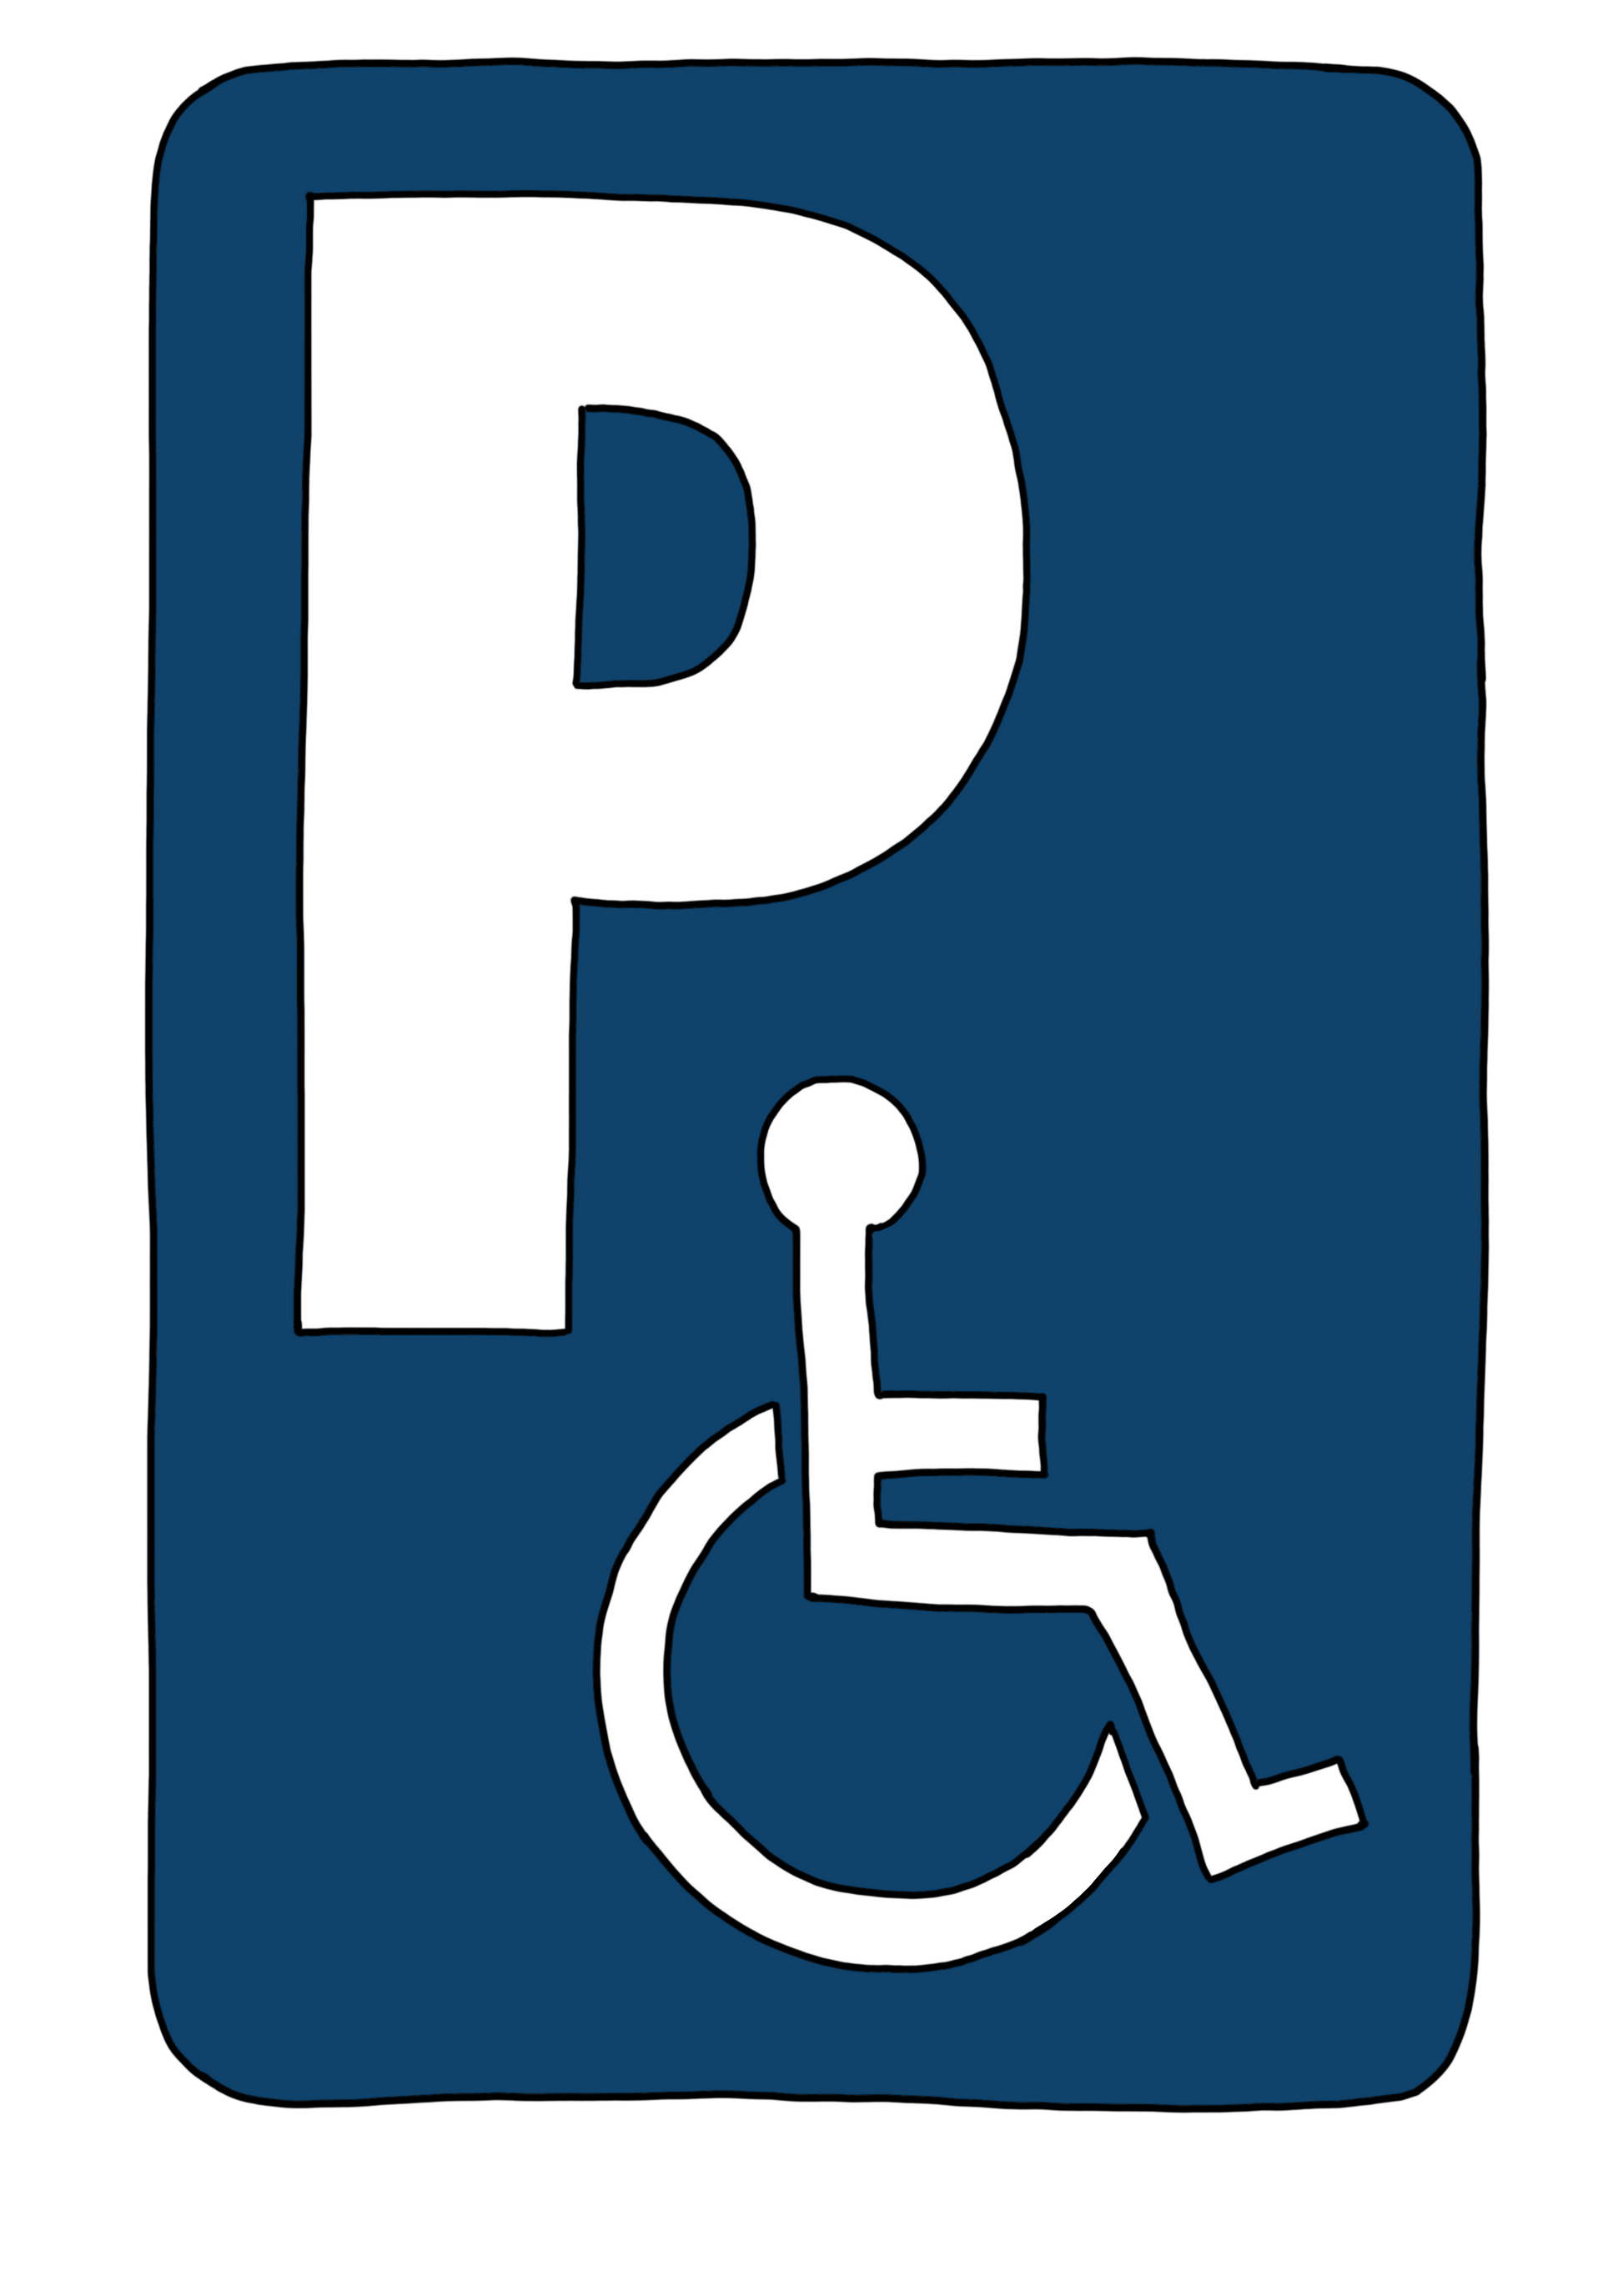 Ein blaues Schild. Auf dem Schild ist ein großes weißes P und ein Rollstuhl-Symbol.